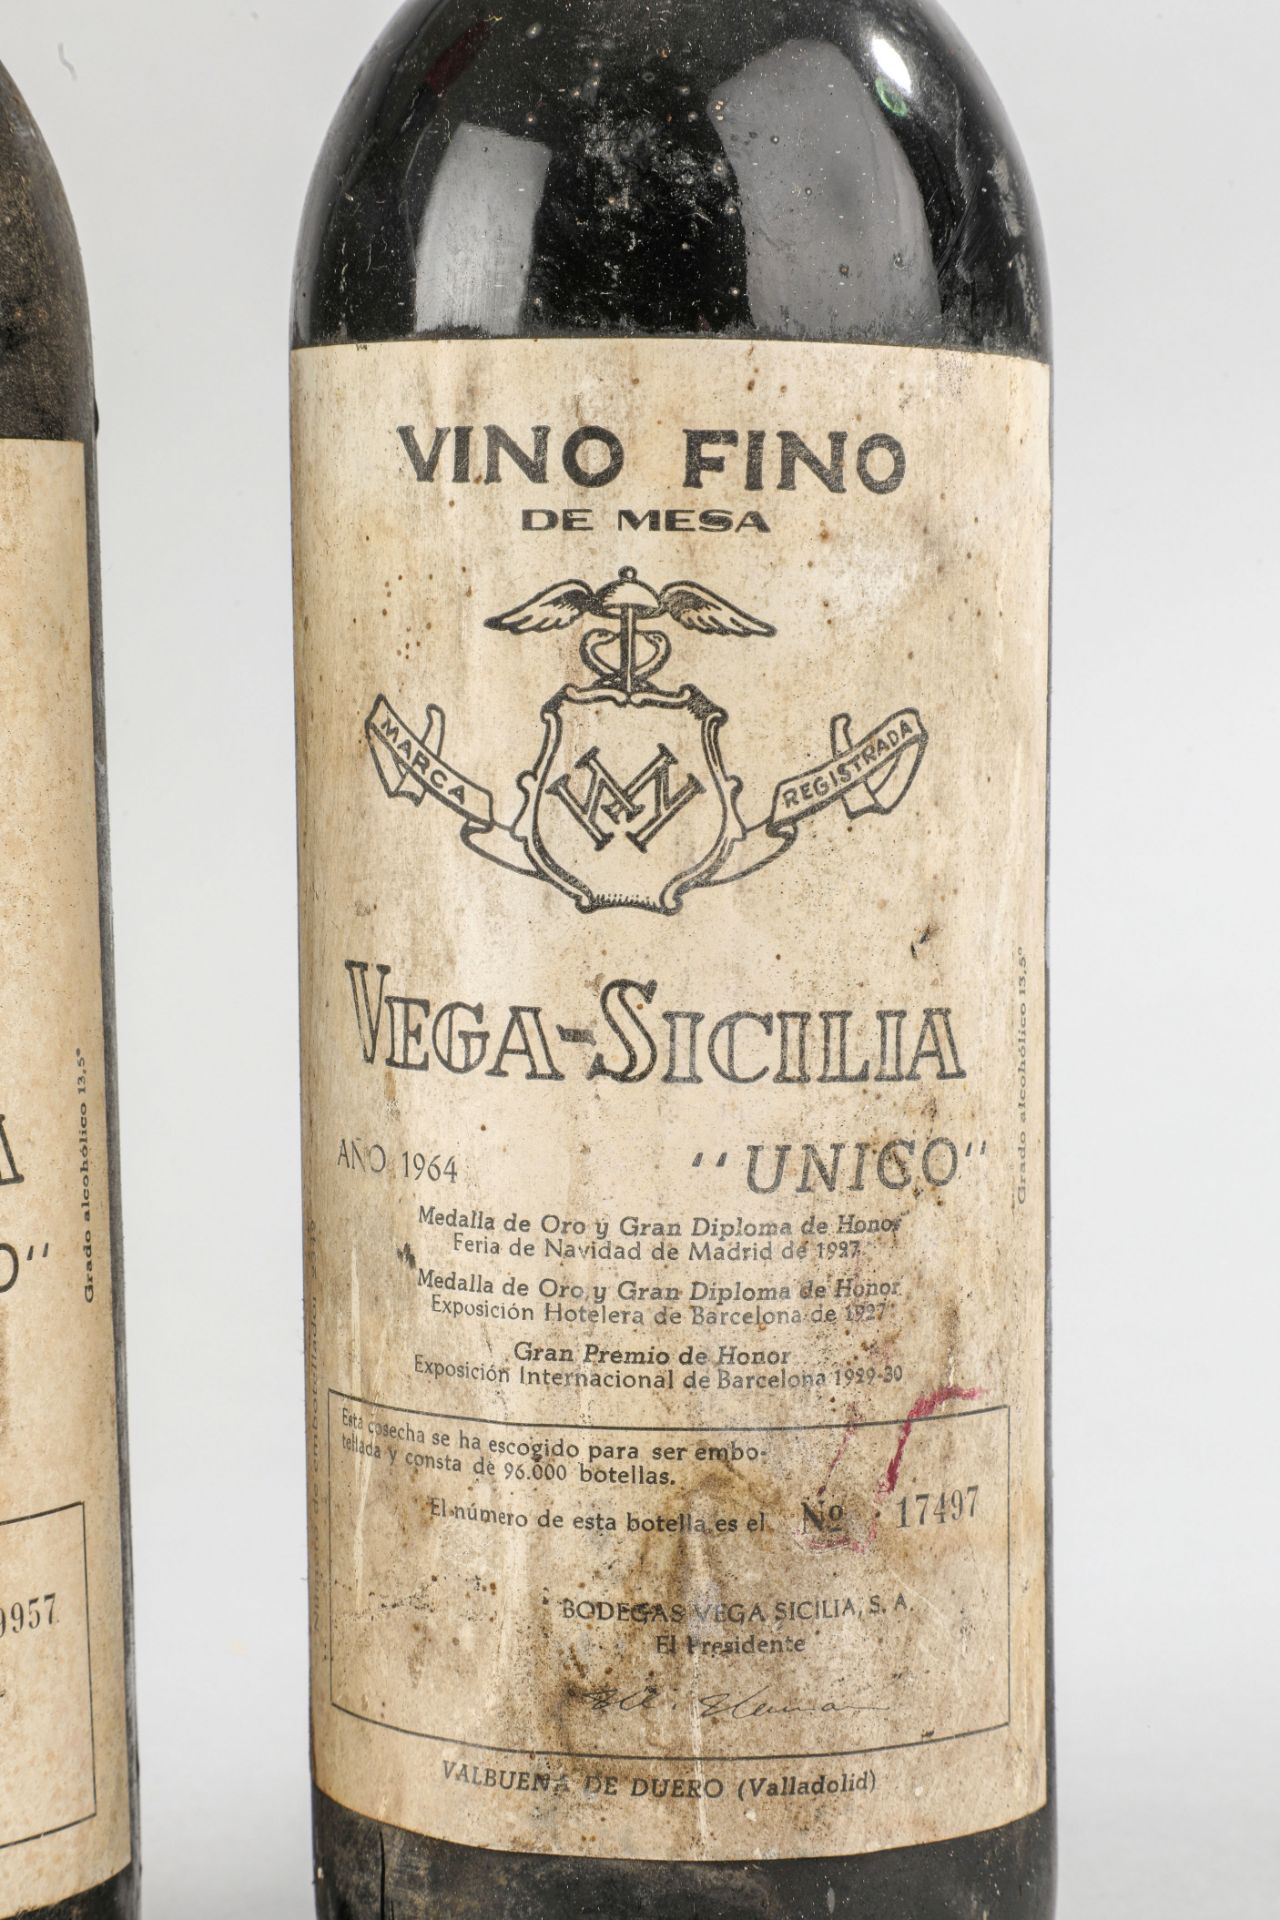 VEGA SICILIA UNICO. 1964. 2 Bouteilles N° 09957 et N°17497 sur production de 96 000 bouteilles. - Image 3 of 5